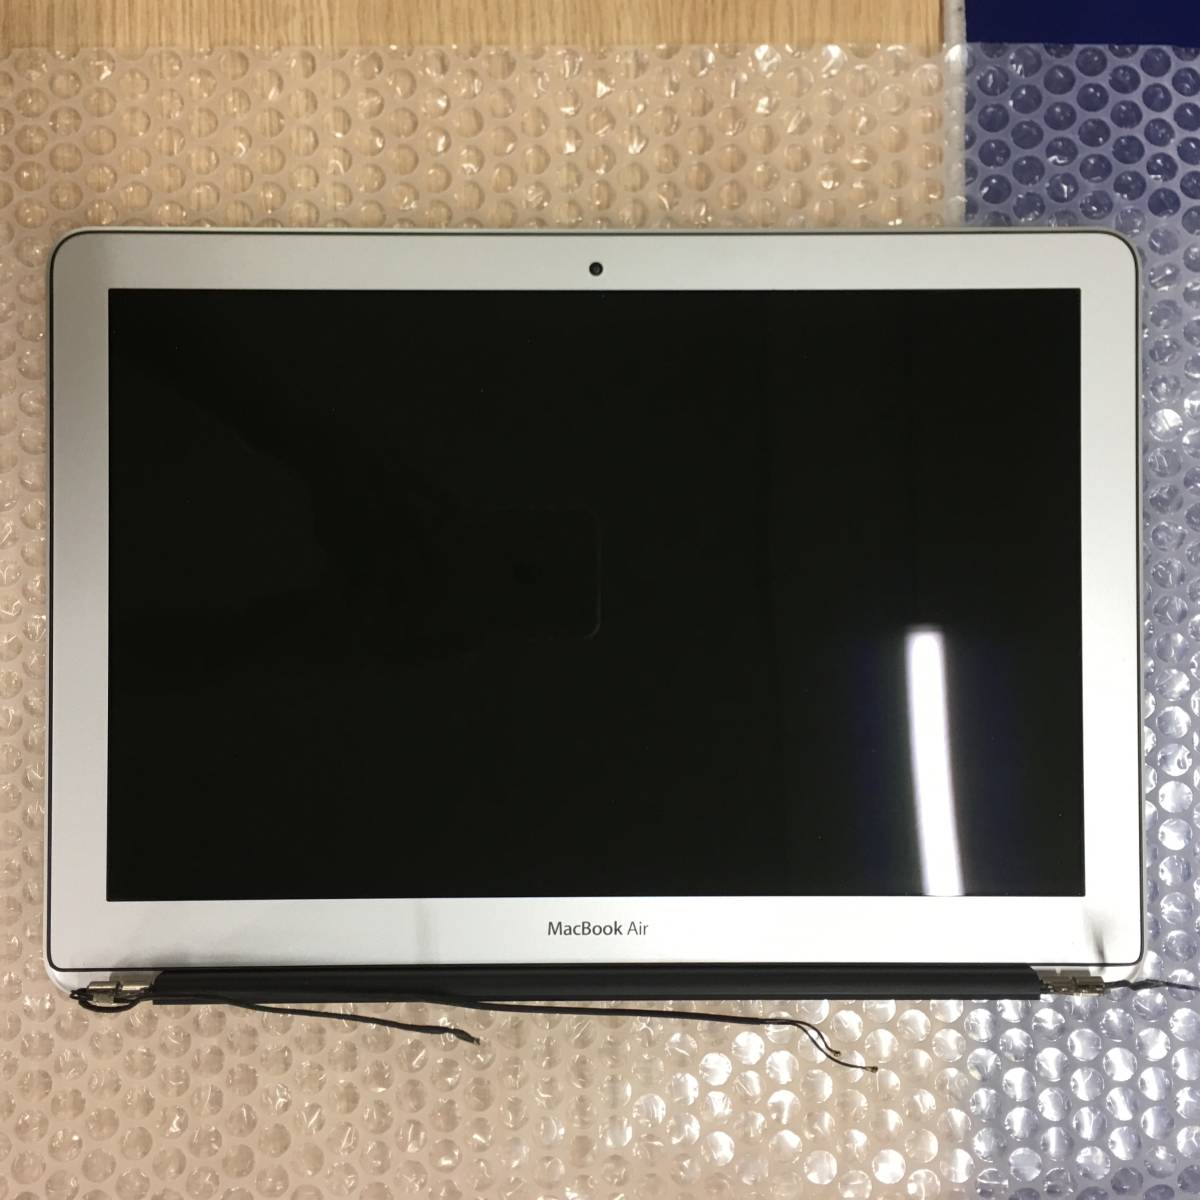 交換用LCDディスプレイ MacBook Air 13 inch 2017 液晶 上半身ユニット 中古取り外し品 動作品